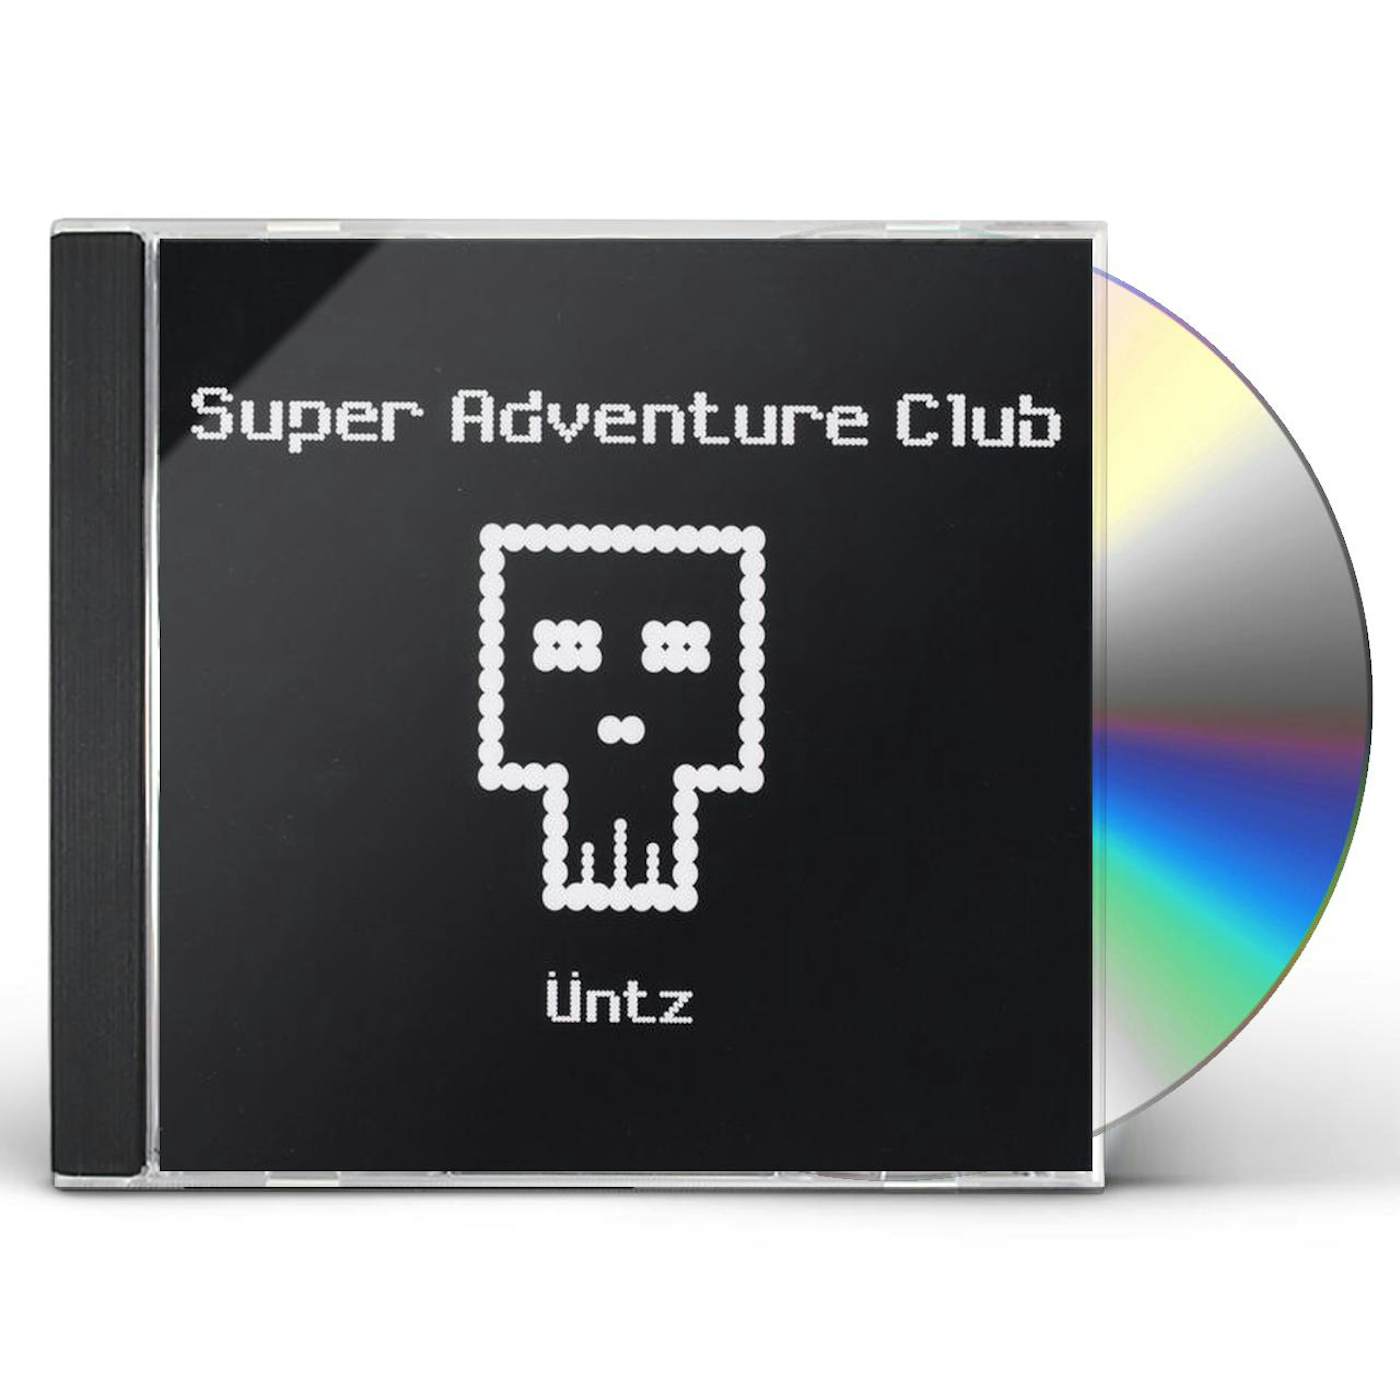 Super Adventure Club ANTZ CD